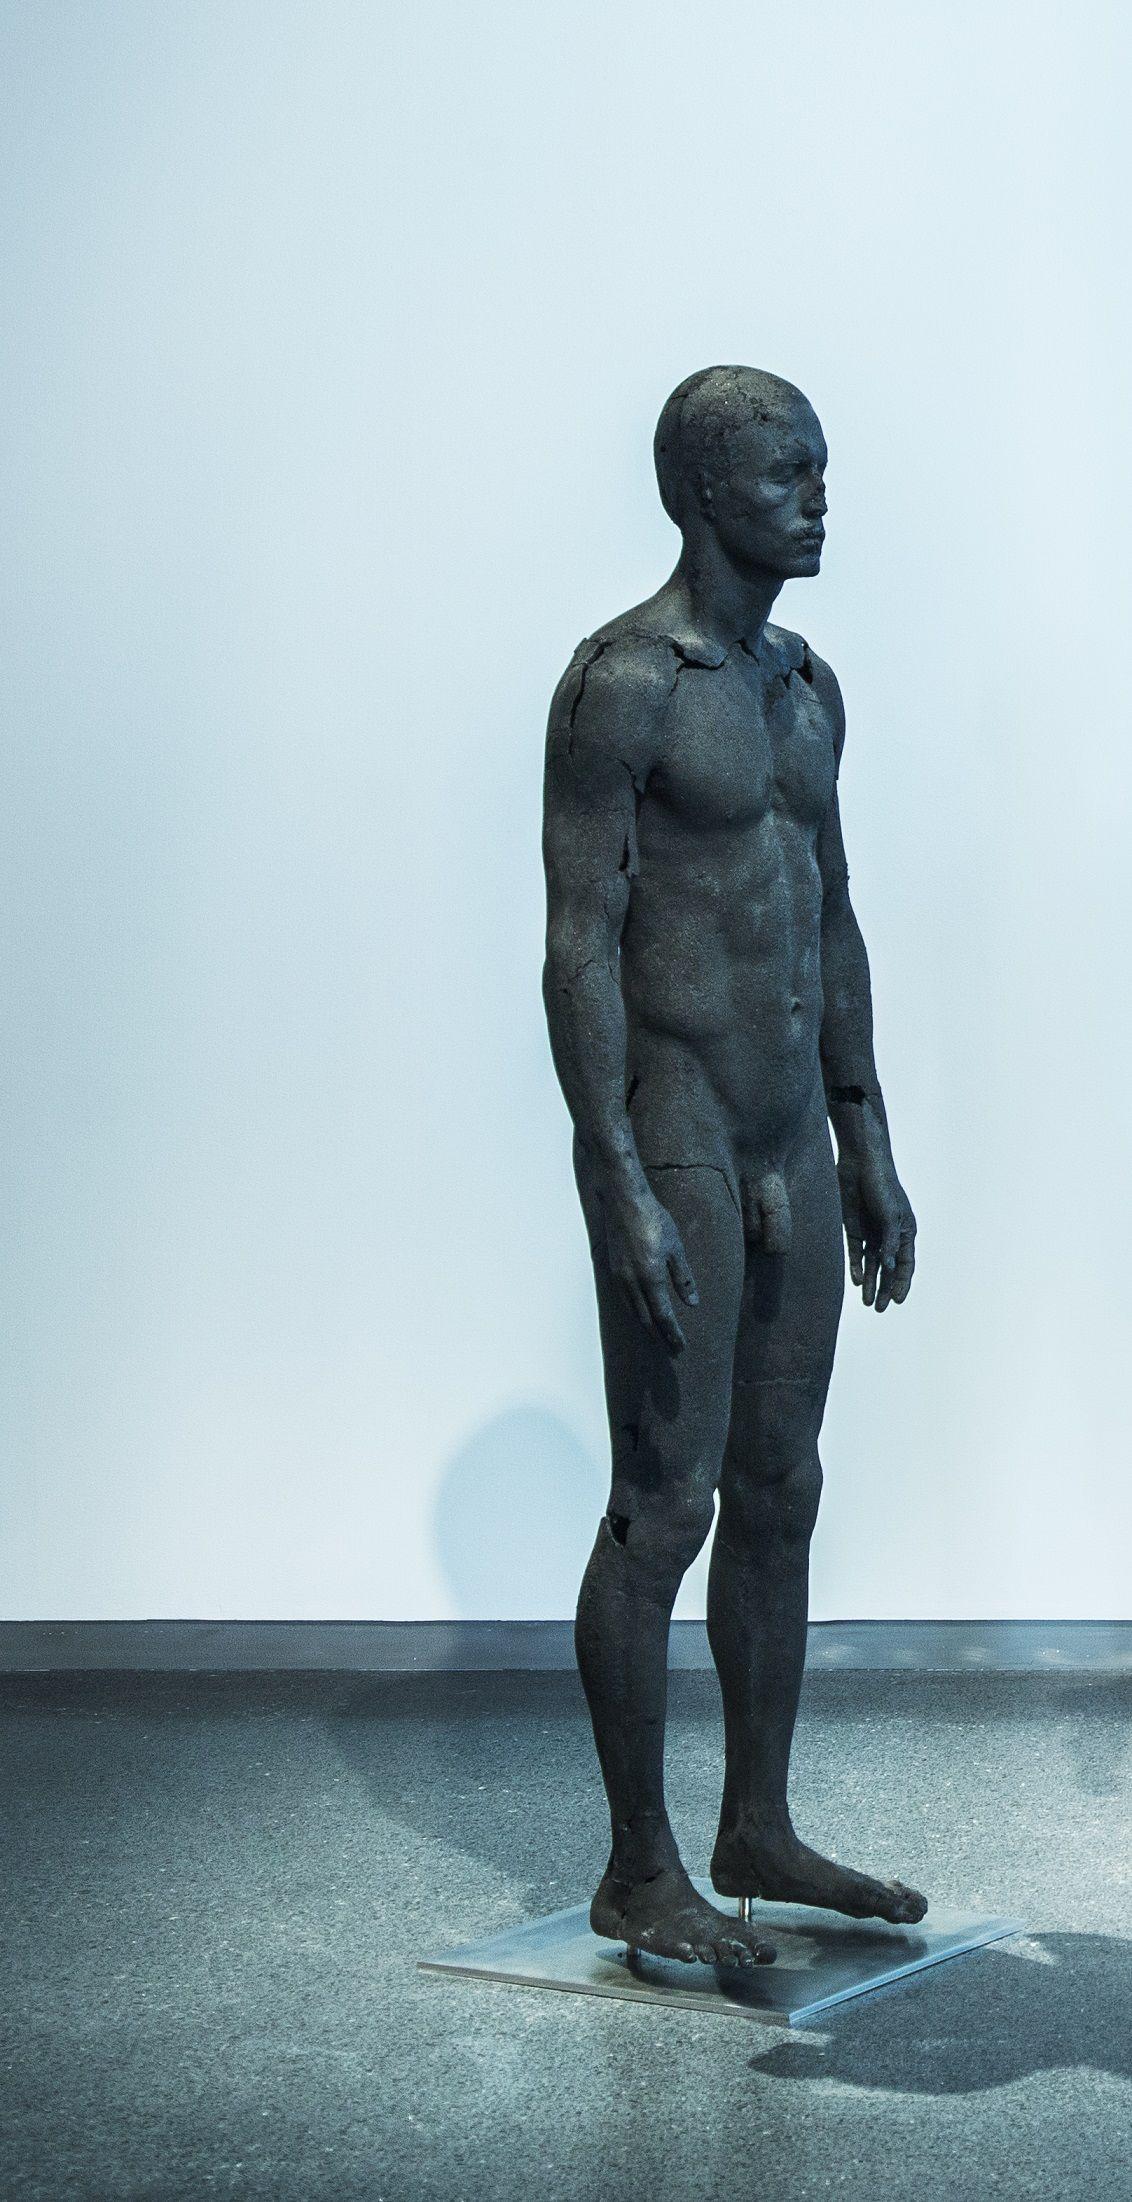 La presencia de la ausencia - Masculino (I) de Tom Price - Escultura de carbón, cuerpo desnudo